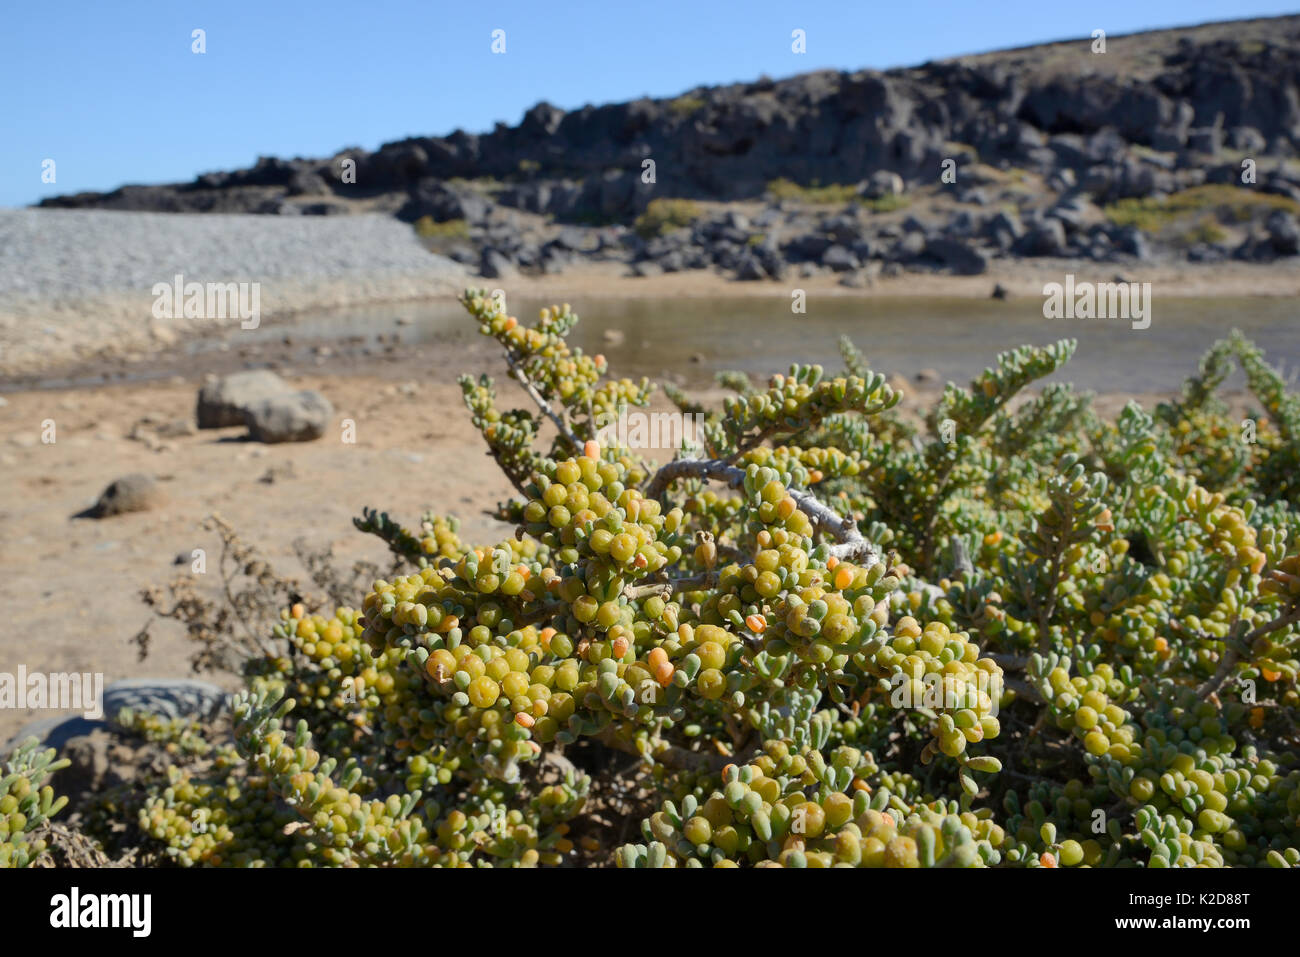 Uva de mar (Zygophyllum fontanesii / Tetraena) arbusto con frutos en desarrollo al margen de una laguna costera arenosa, Tenerife, Mayo. Foto de stock